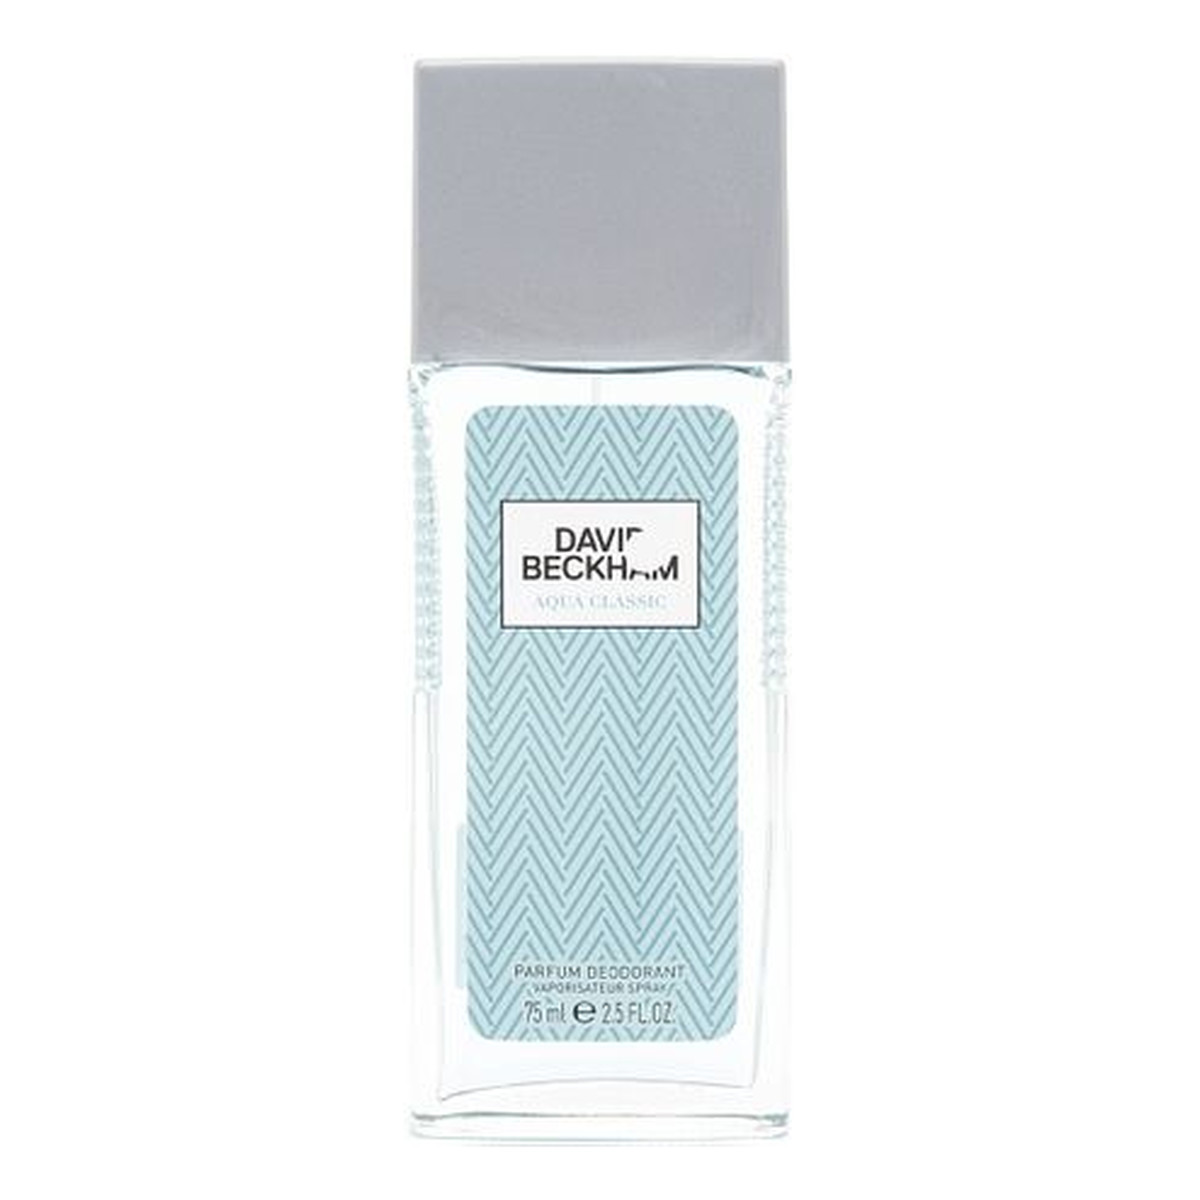 David Beckham Aqua Classic dezodorant spray 75ml